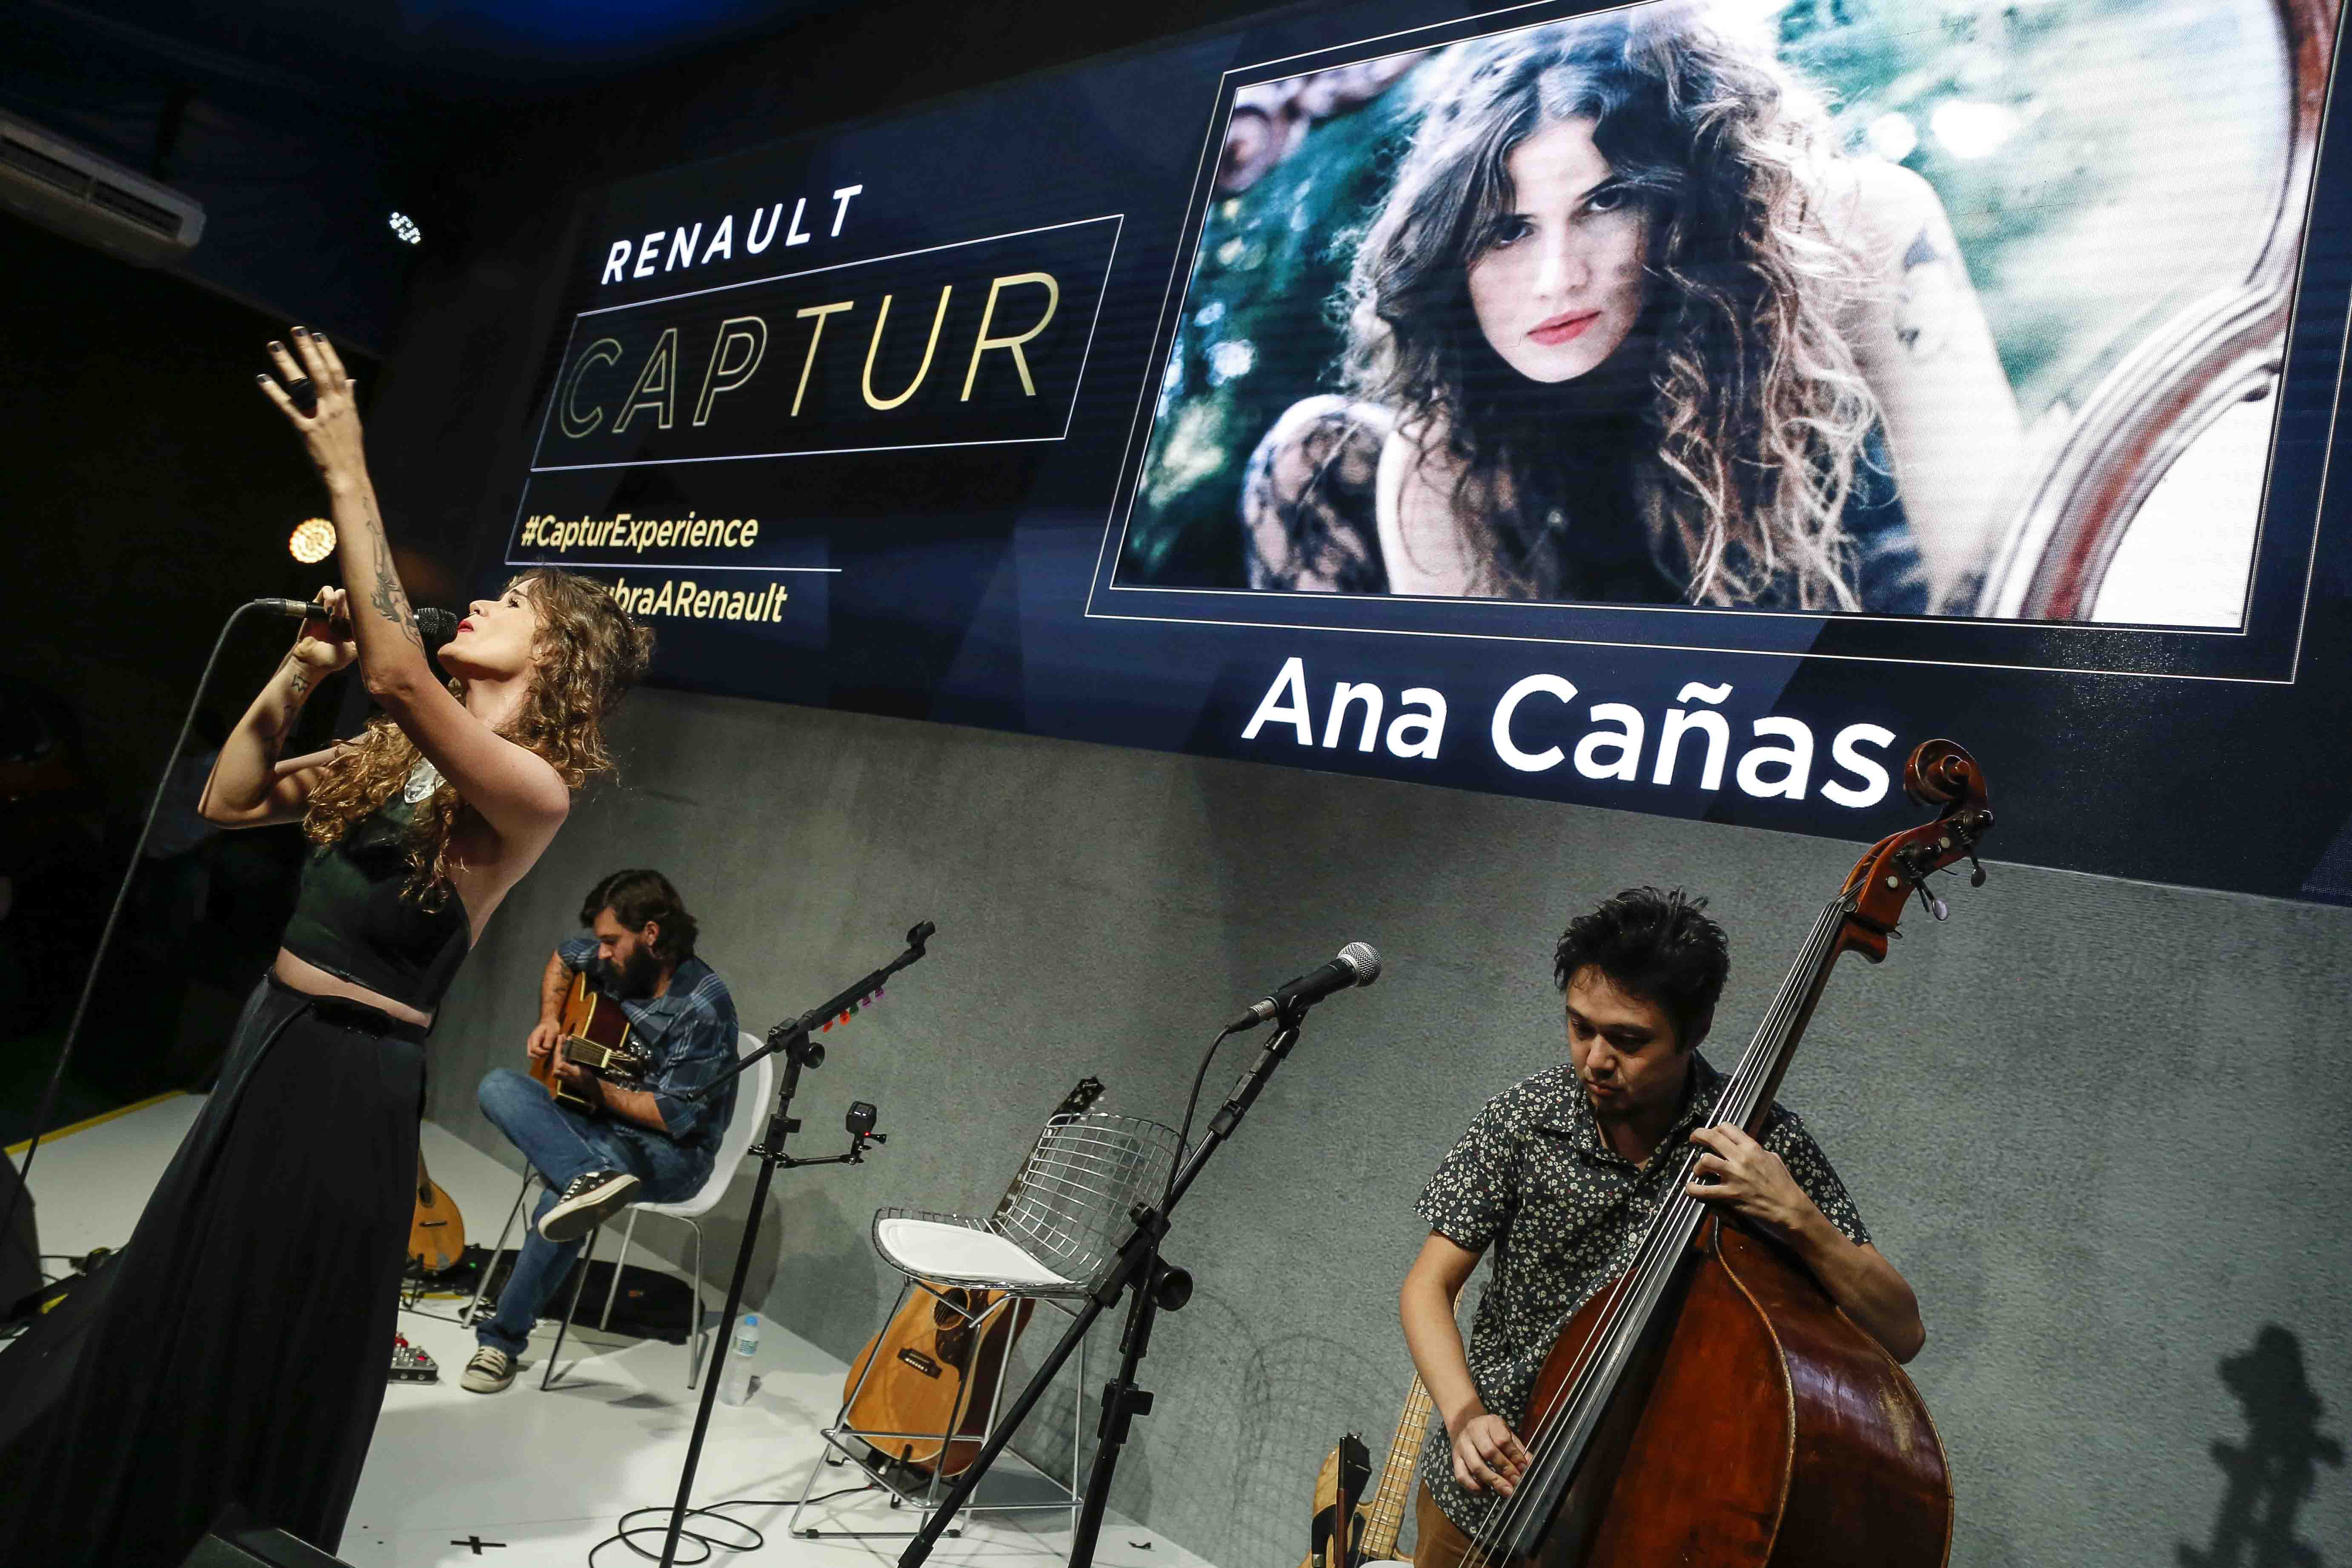 Ana Cañas arrasou em show na Renault Captur Experience